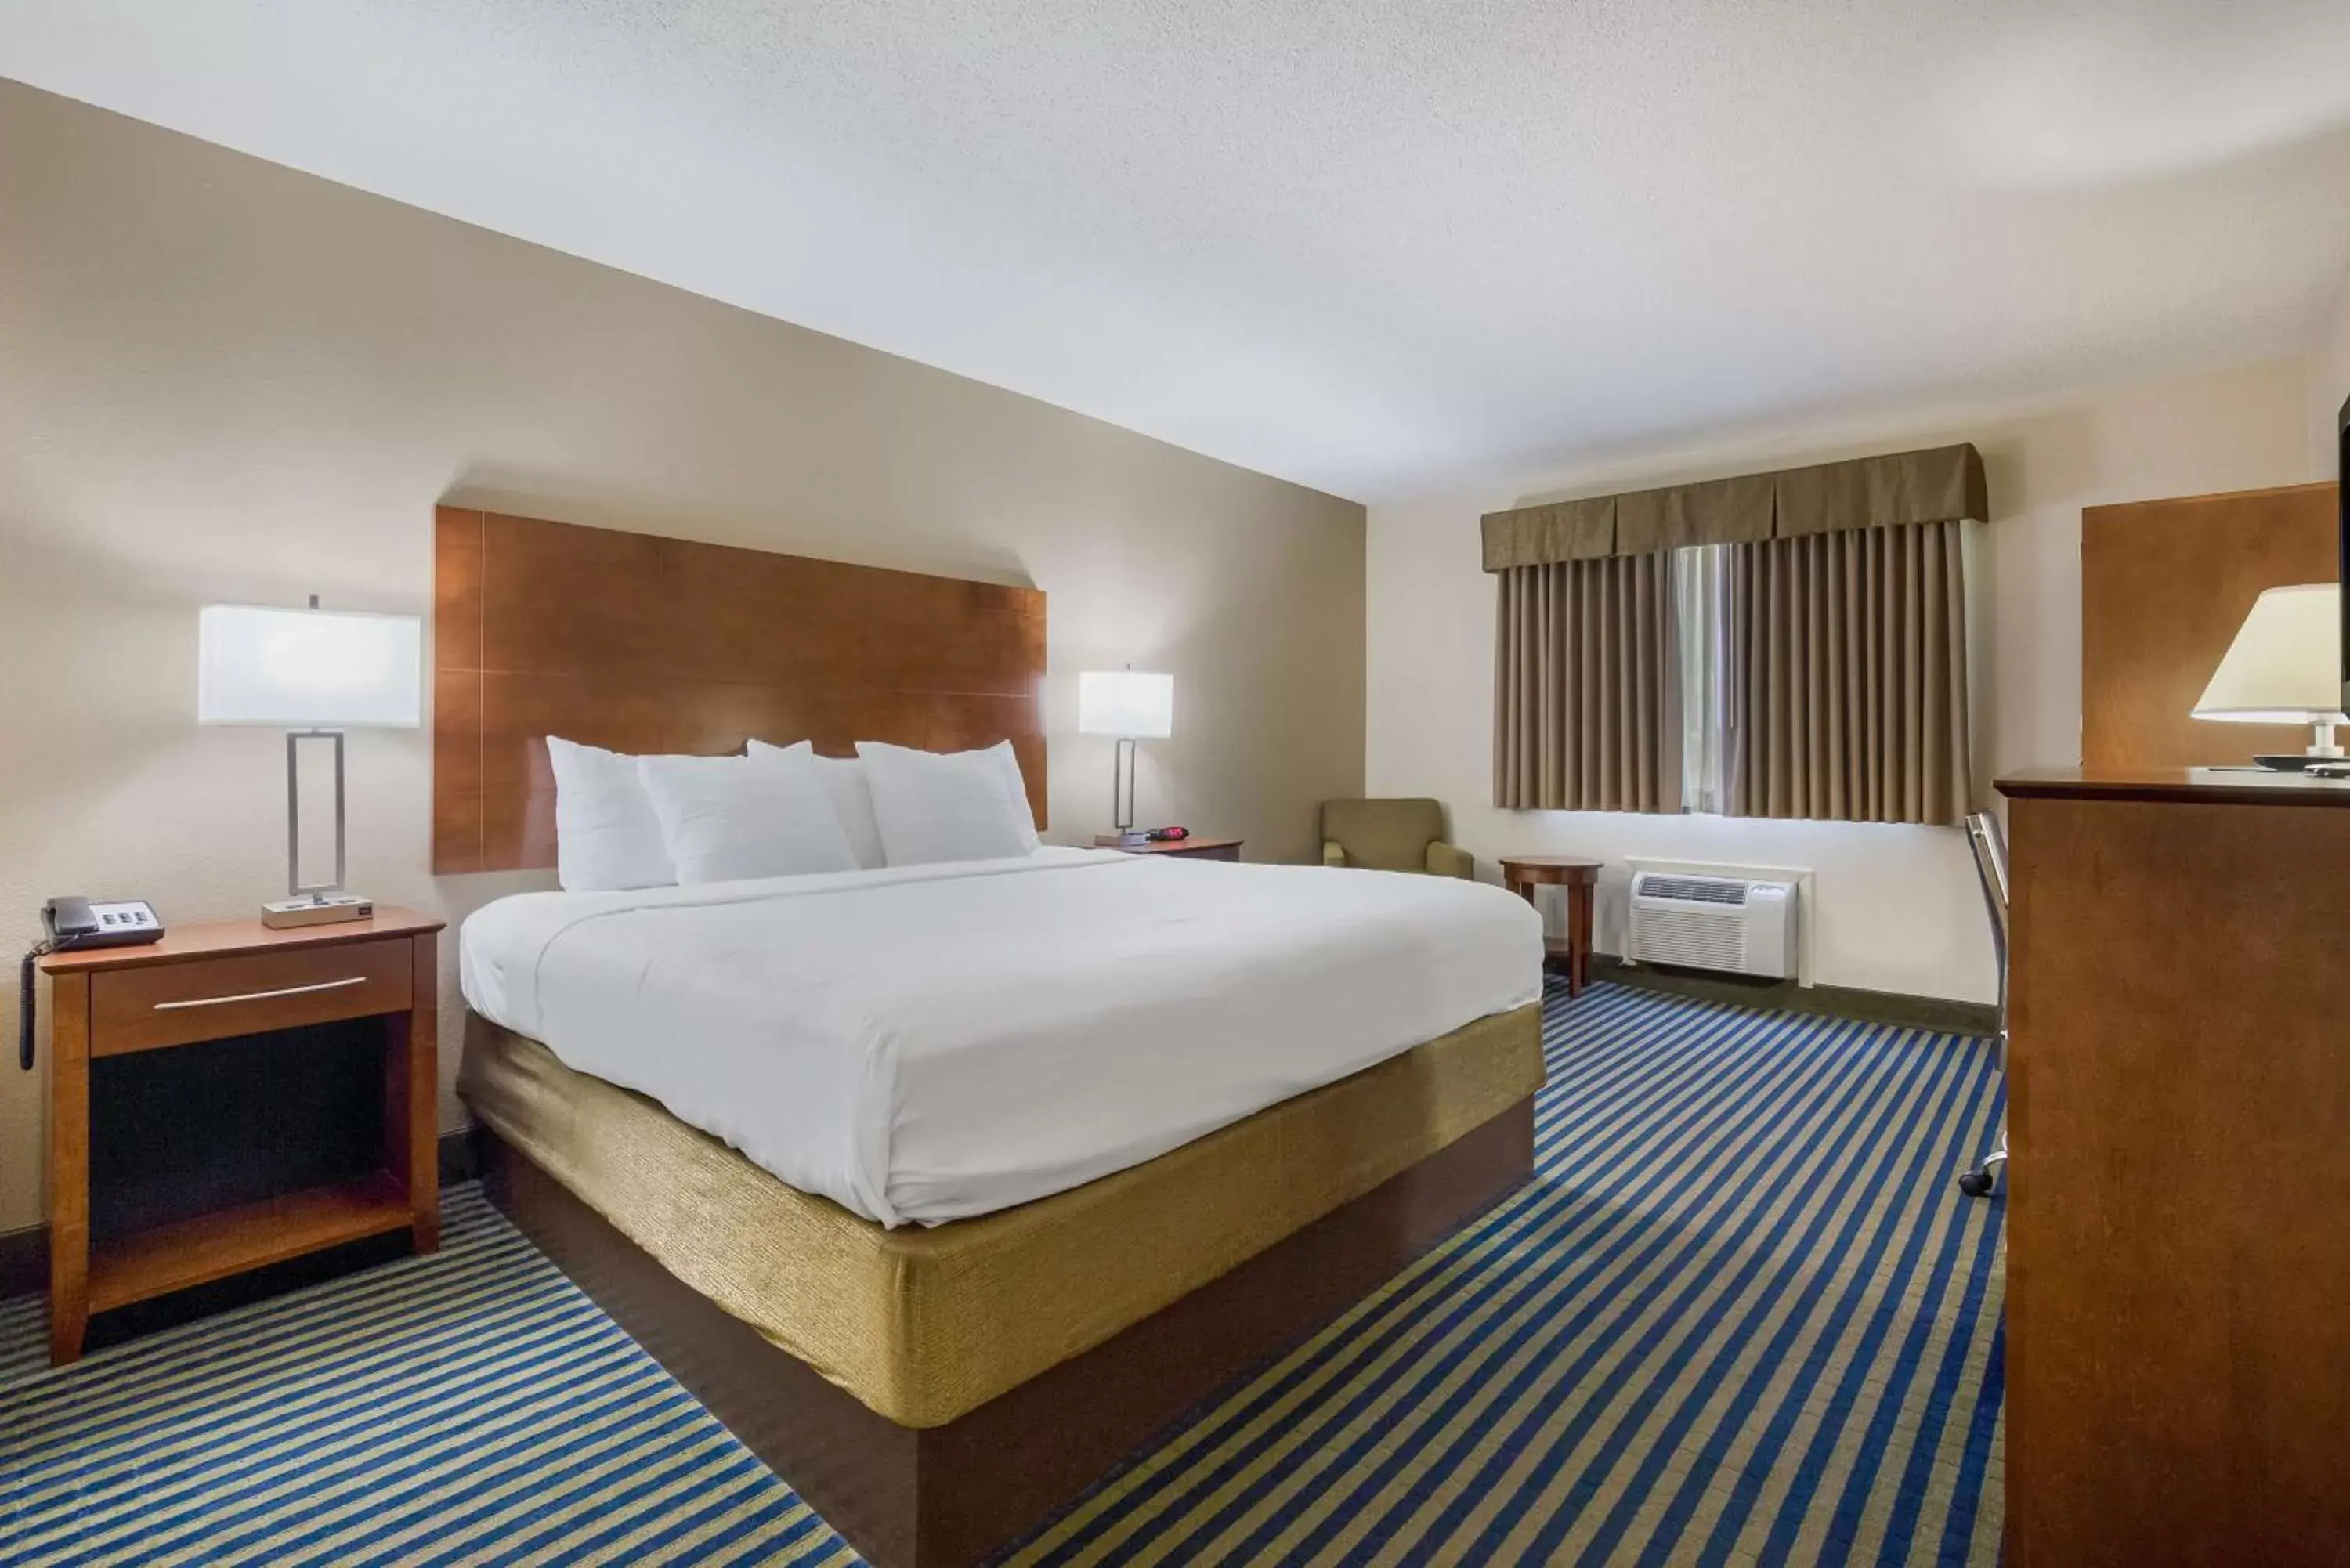 Bedroom, Bed in Best Western U.S. Inn